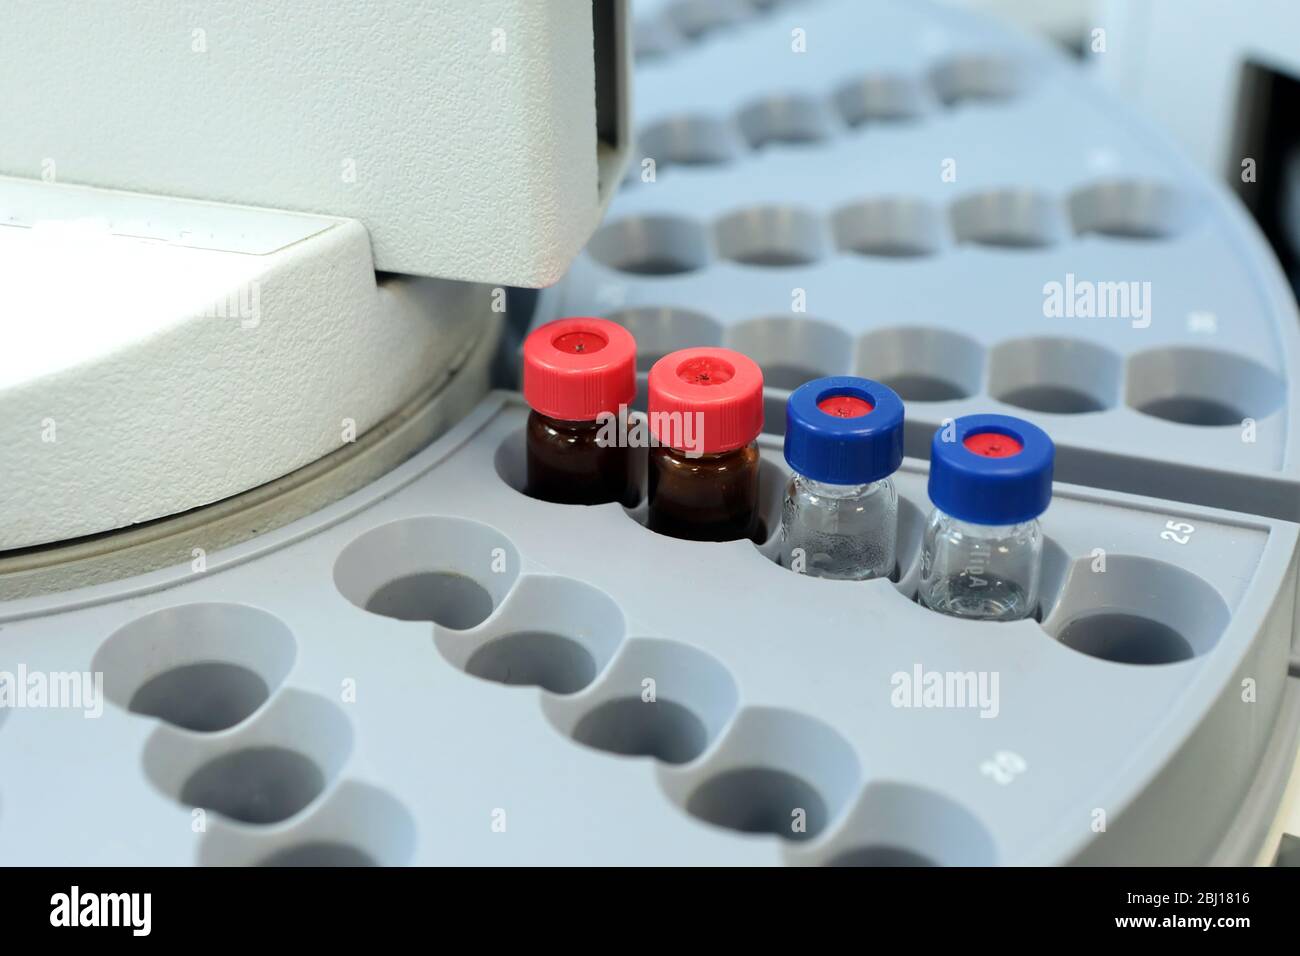 Controllo qualità laboratorio medicina. Funzionamento del cromatografo. I flaconi controllano la qualità della sospensione. Foto Stock